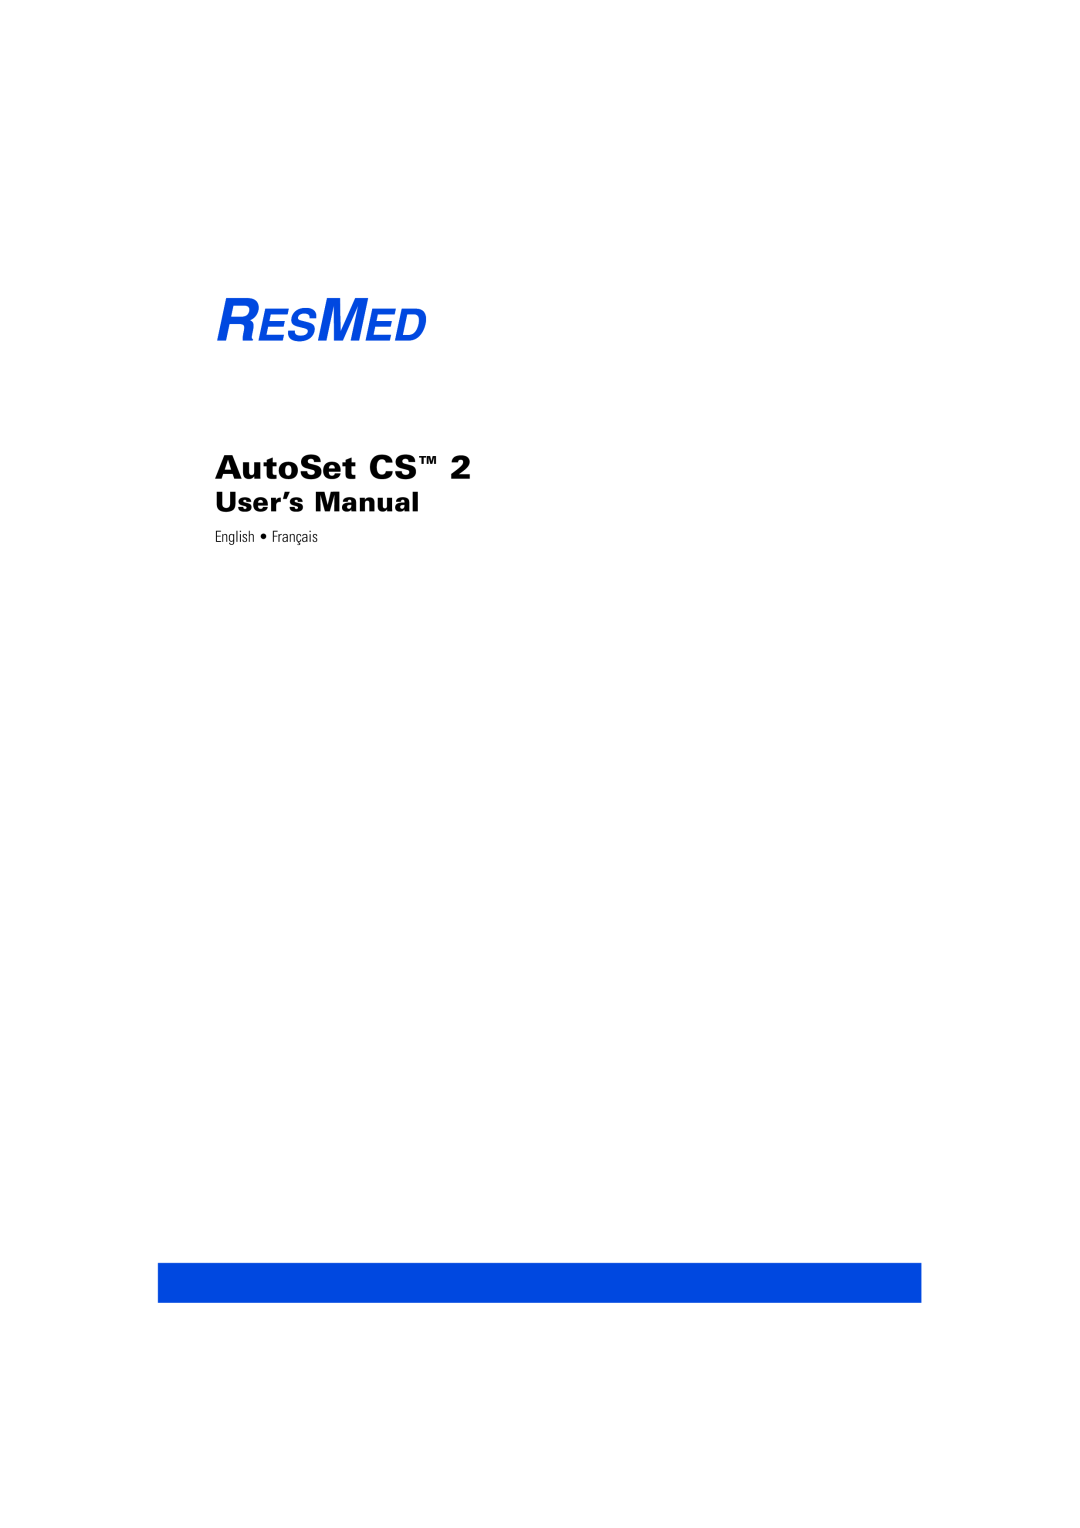 ResMed AutoSet CS 2 user manual User’s Manual 